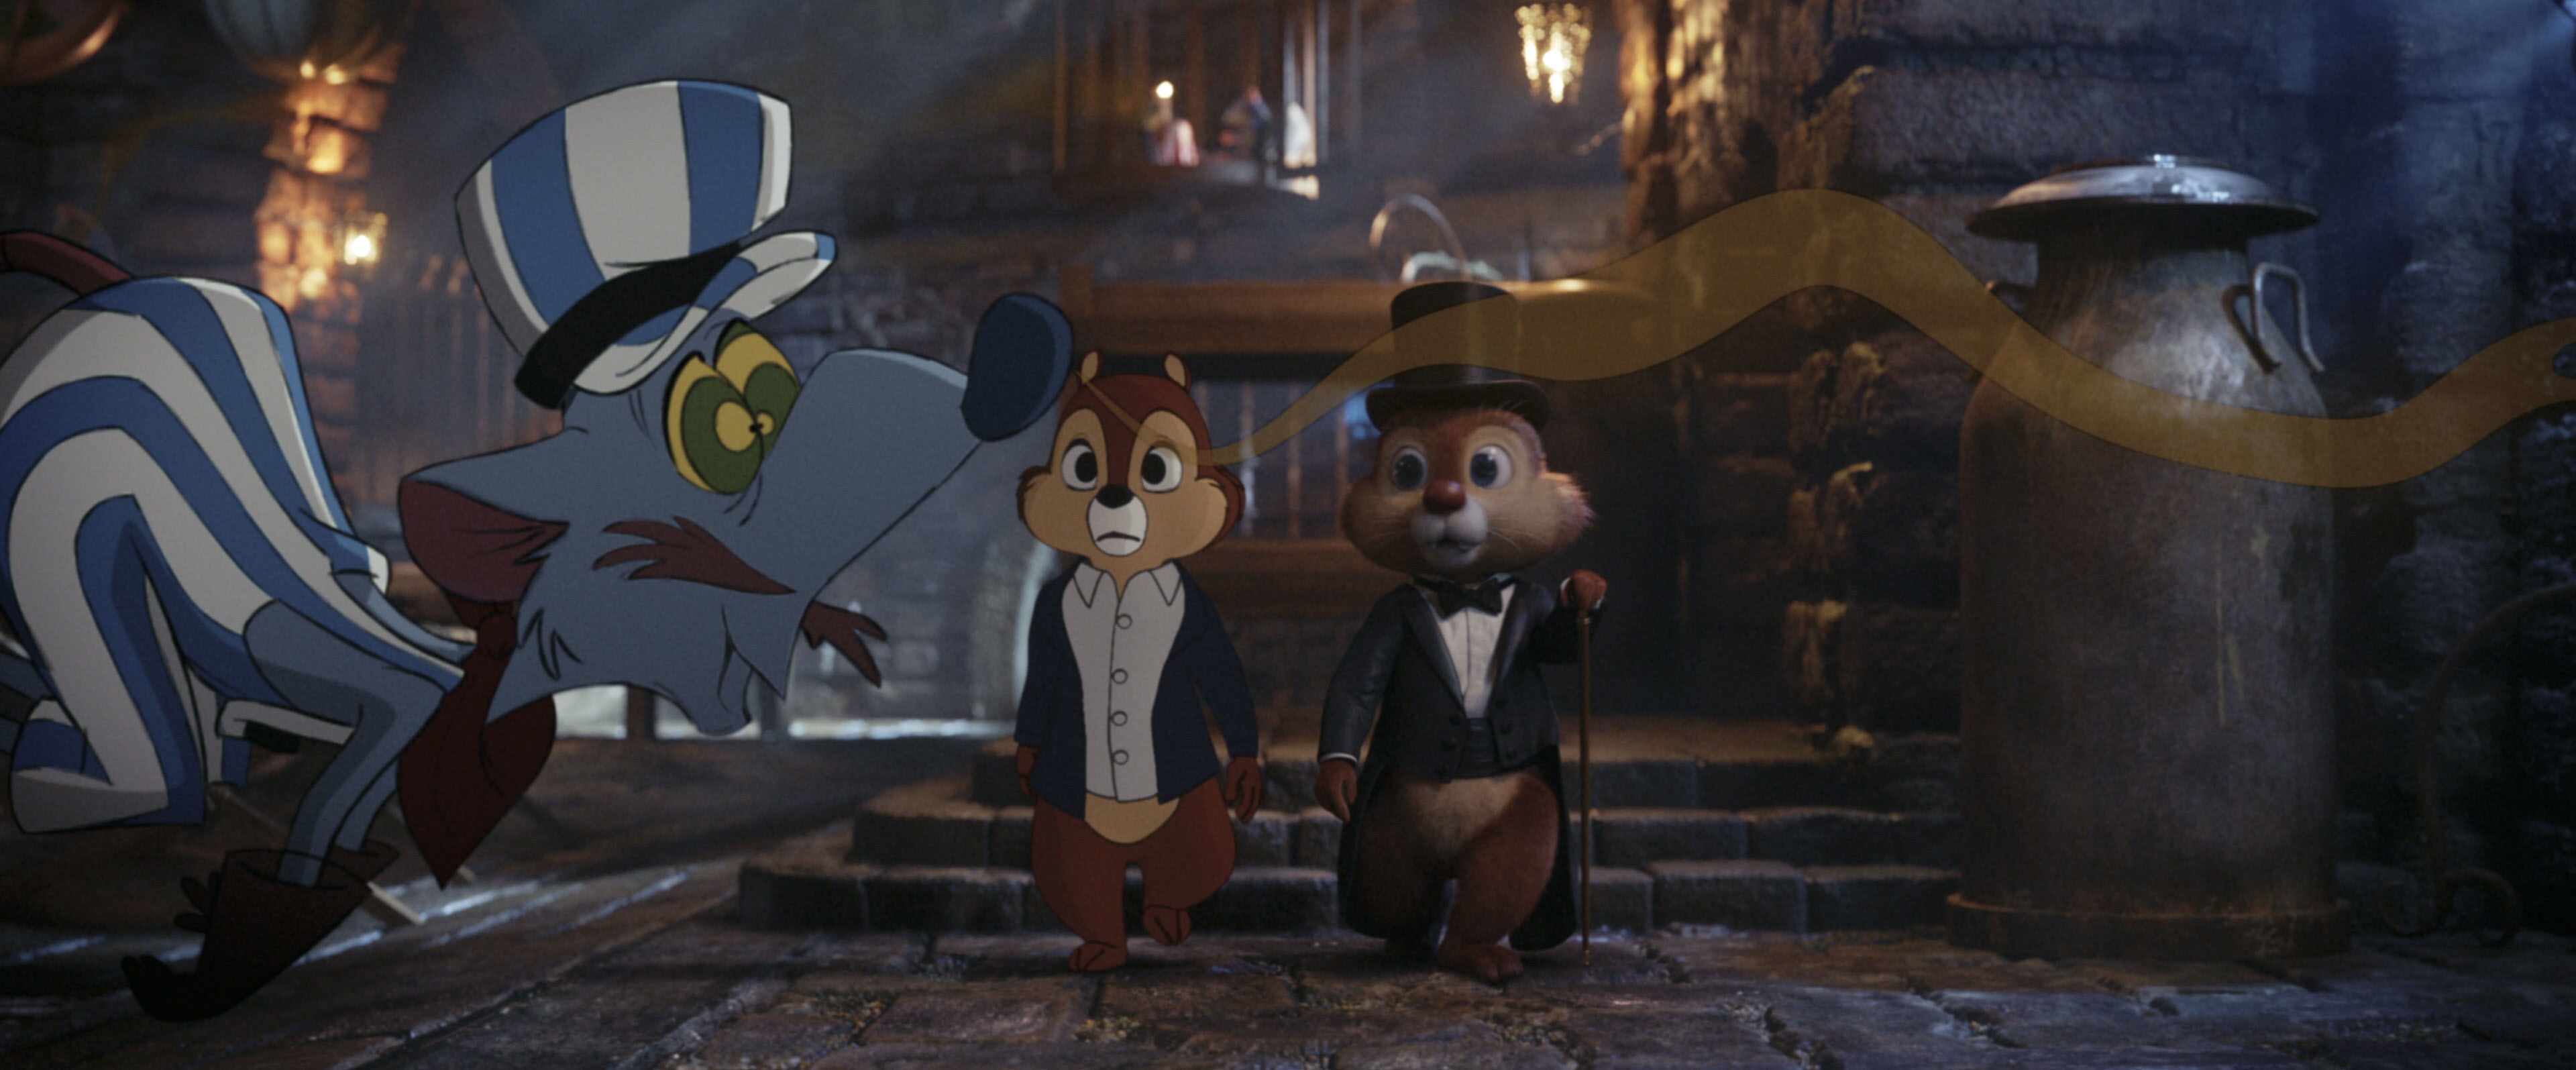 Tico e Teco: 5 curiosidades sobre a dupla animada da Disney